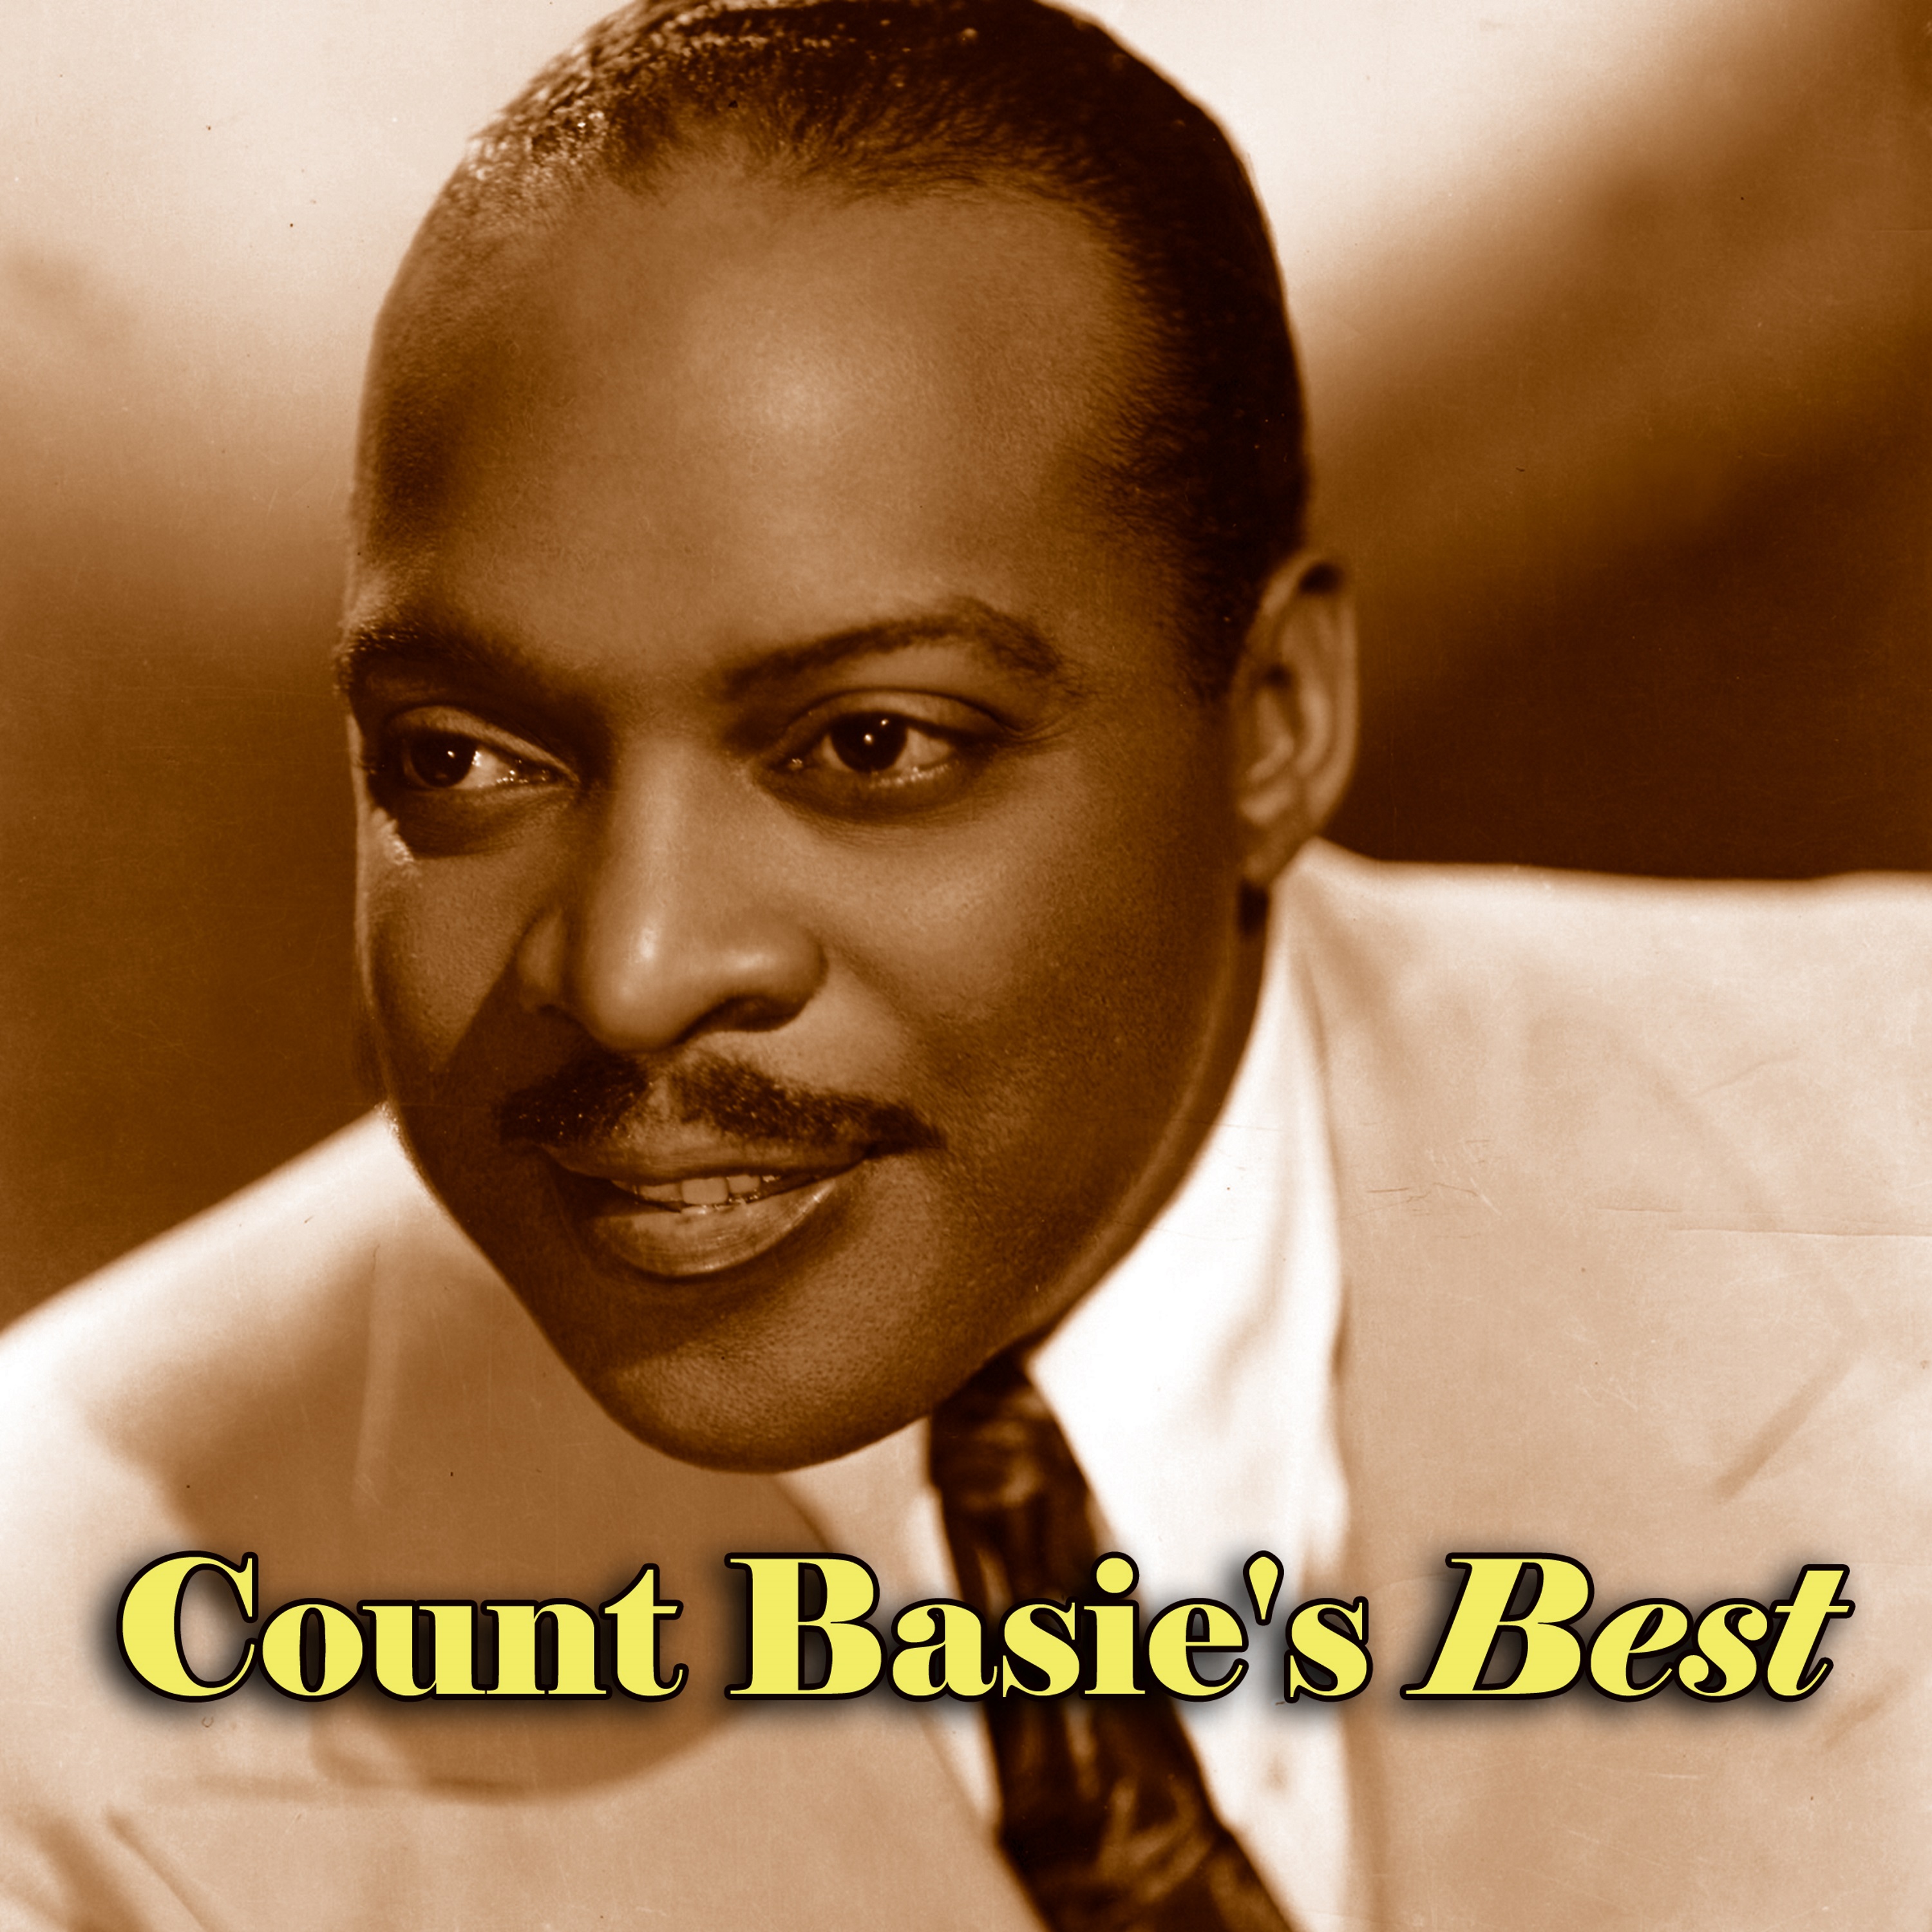 Count Basie's Best